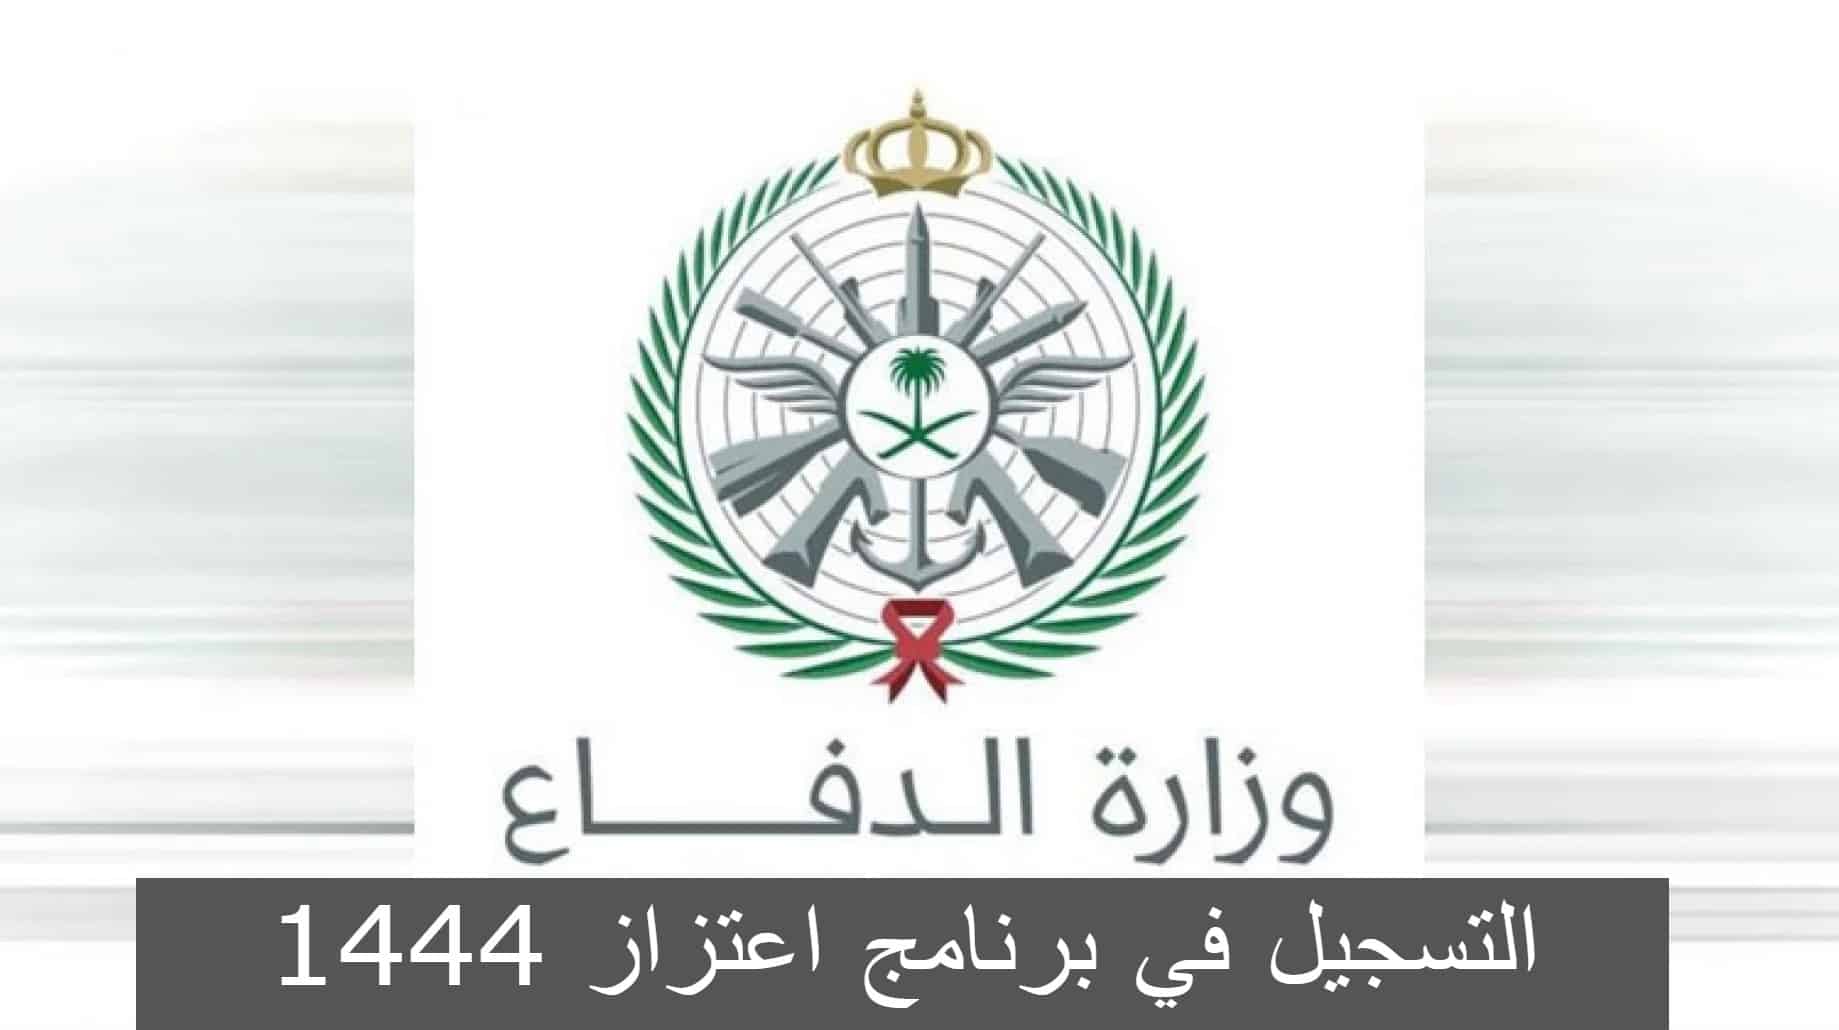 طريقة التسجيل في برنامج اعتزاز وزارة الدفاع السعودية 1444 والأهداف من البرنامج “تفاصيل”